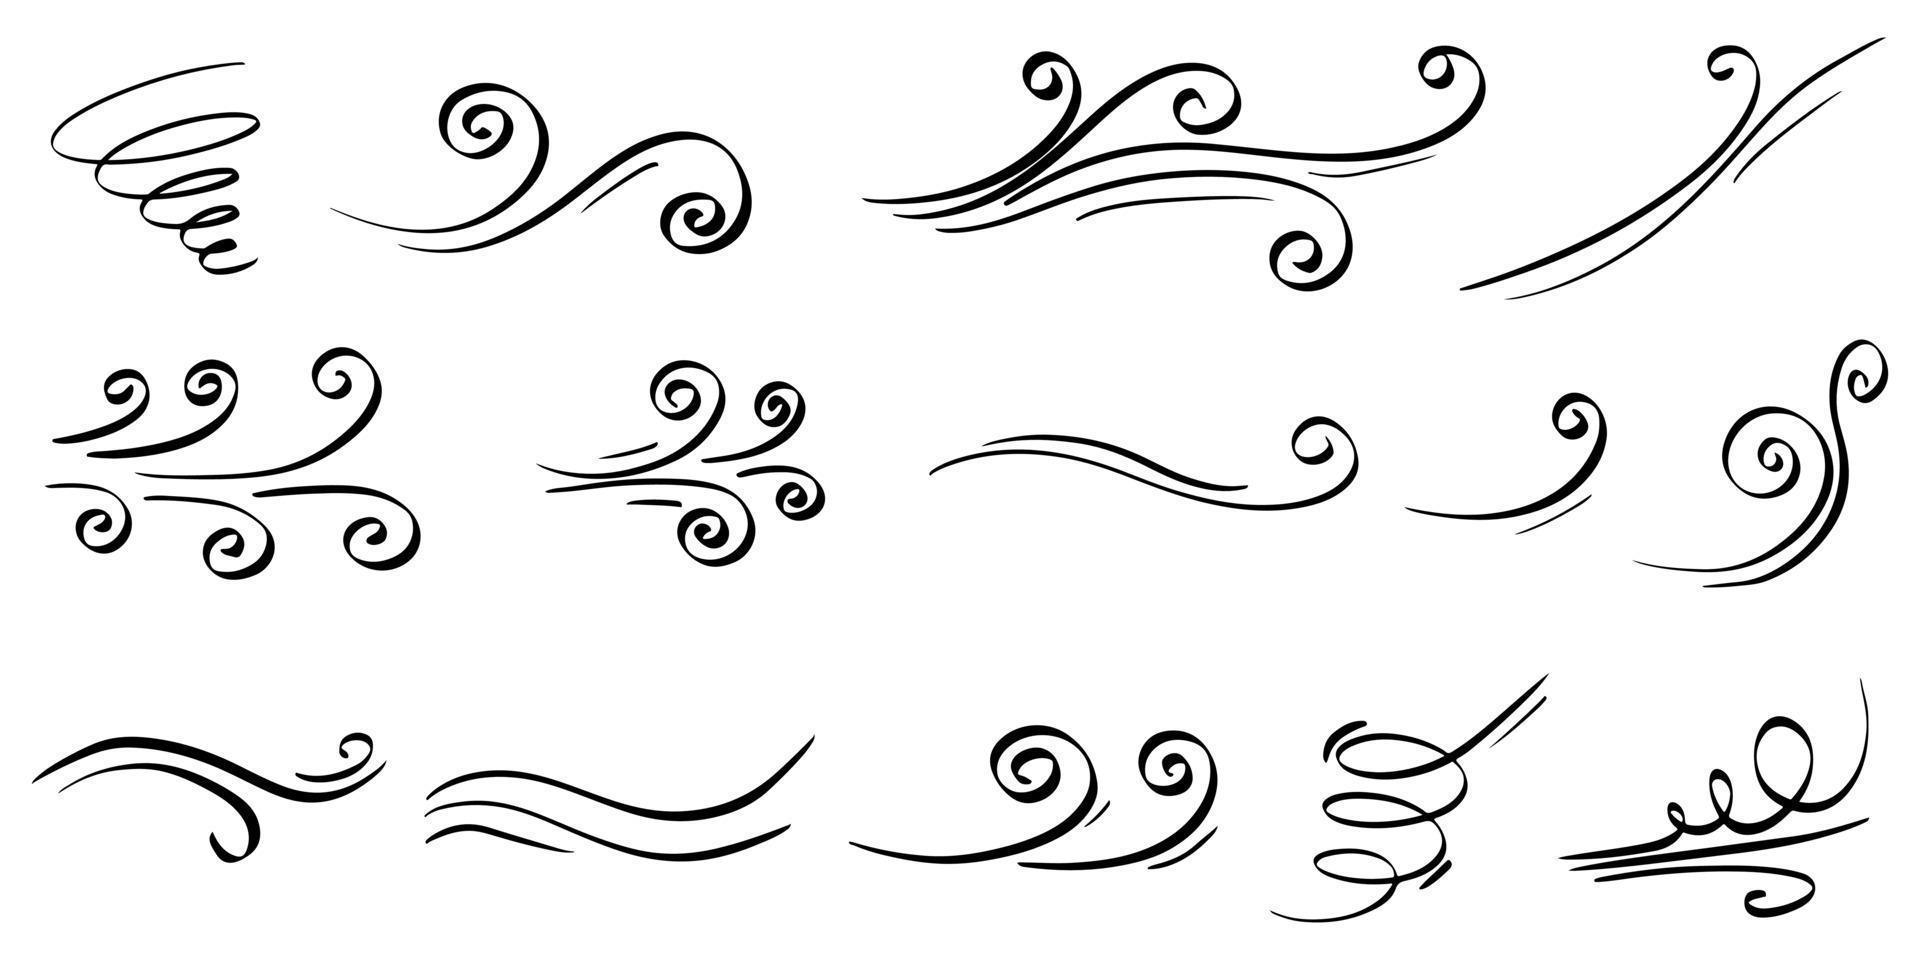 scarabocchio di raffica di vento isolato su uno sfondo bianco. illustrazione vettoriale disegnata a mano.